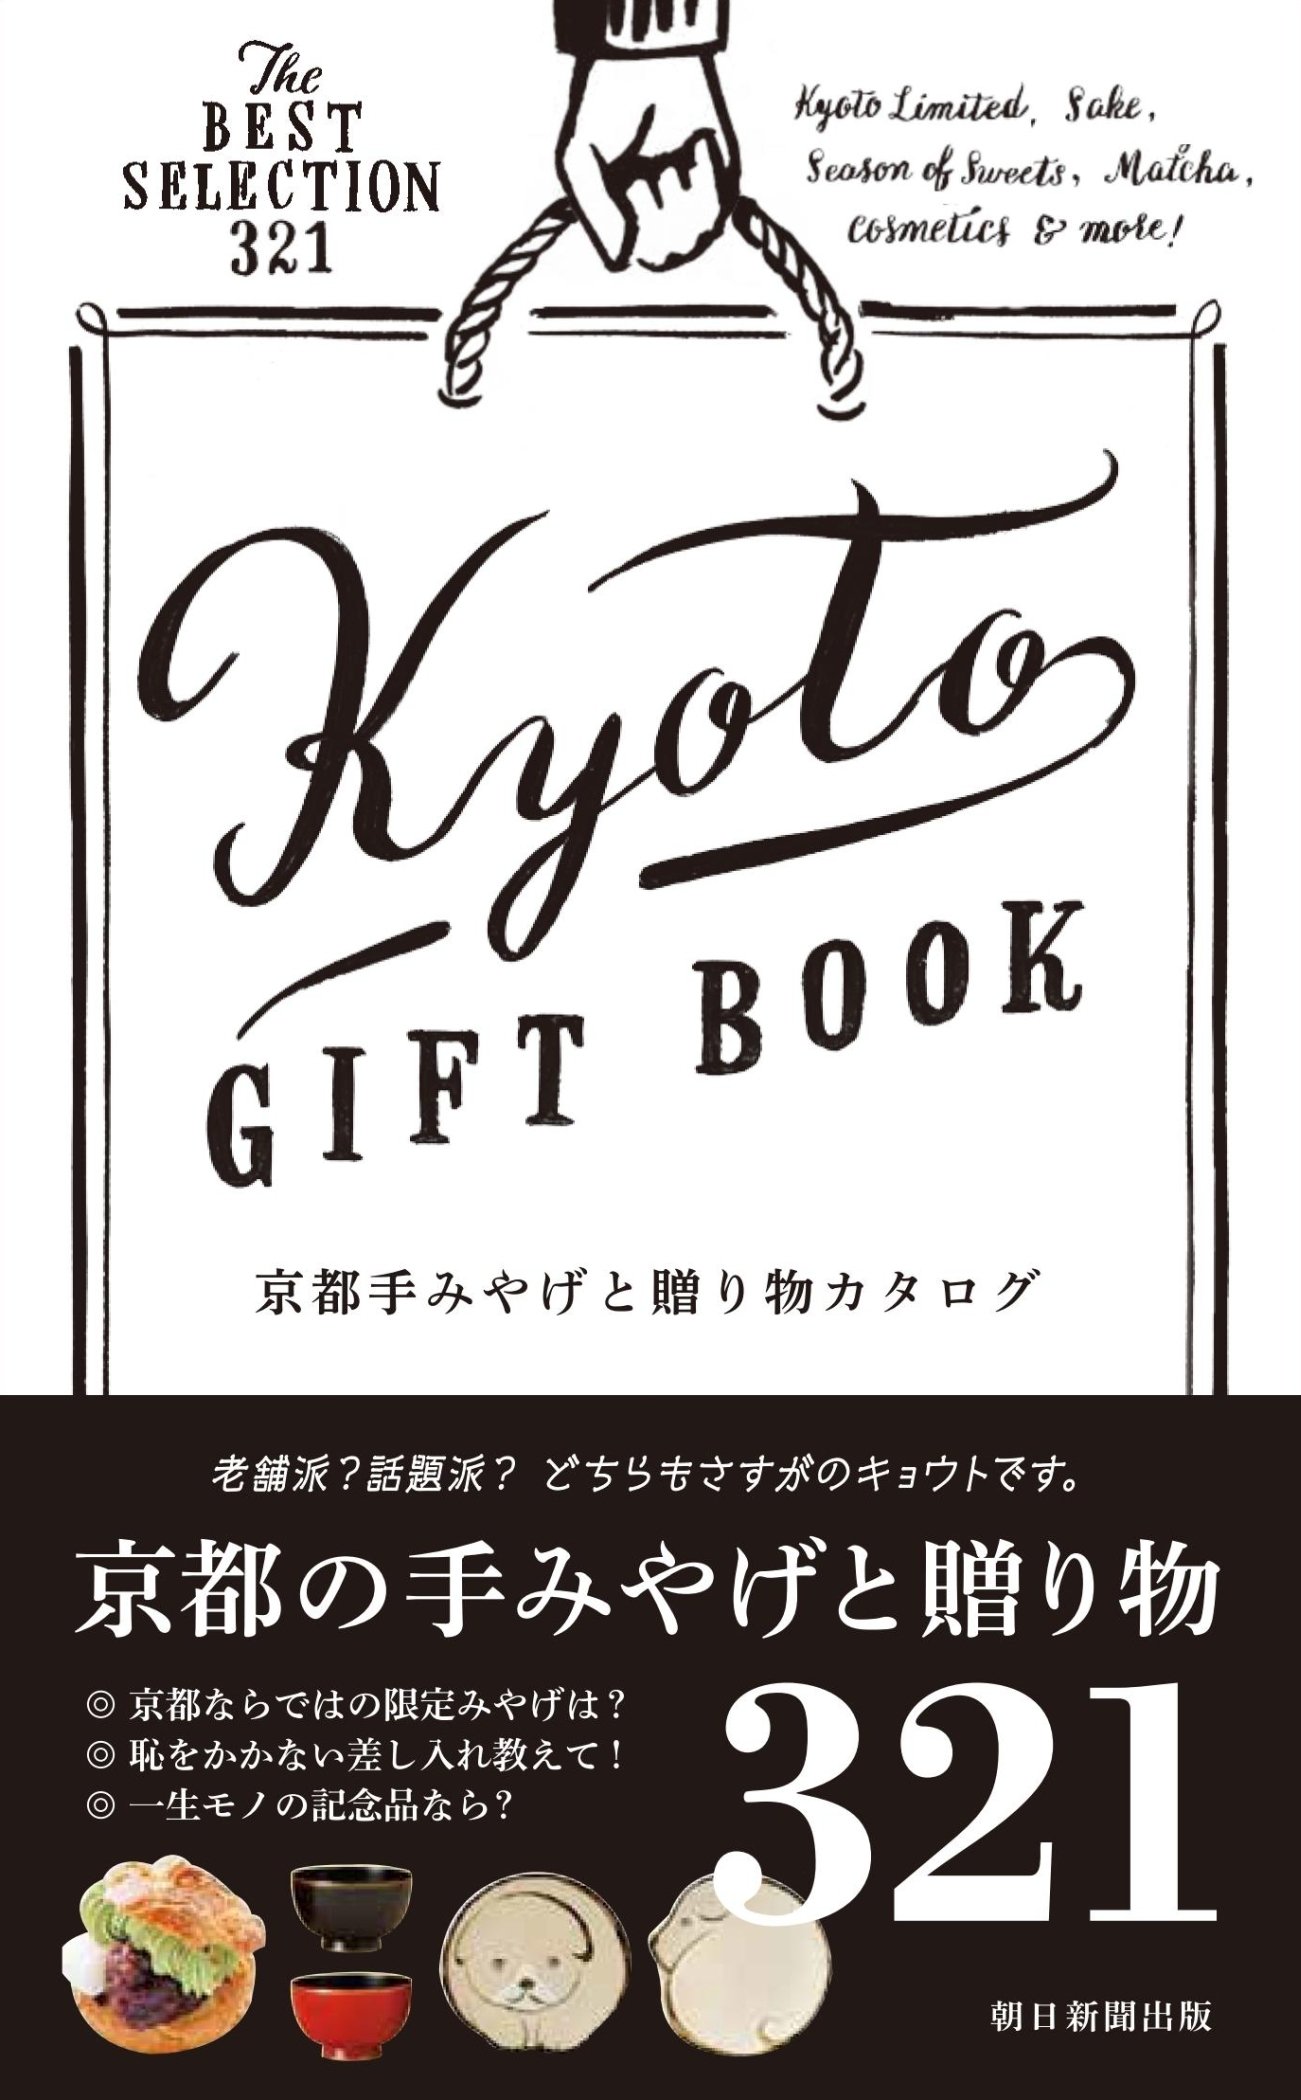 kyoto_giftbook